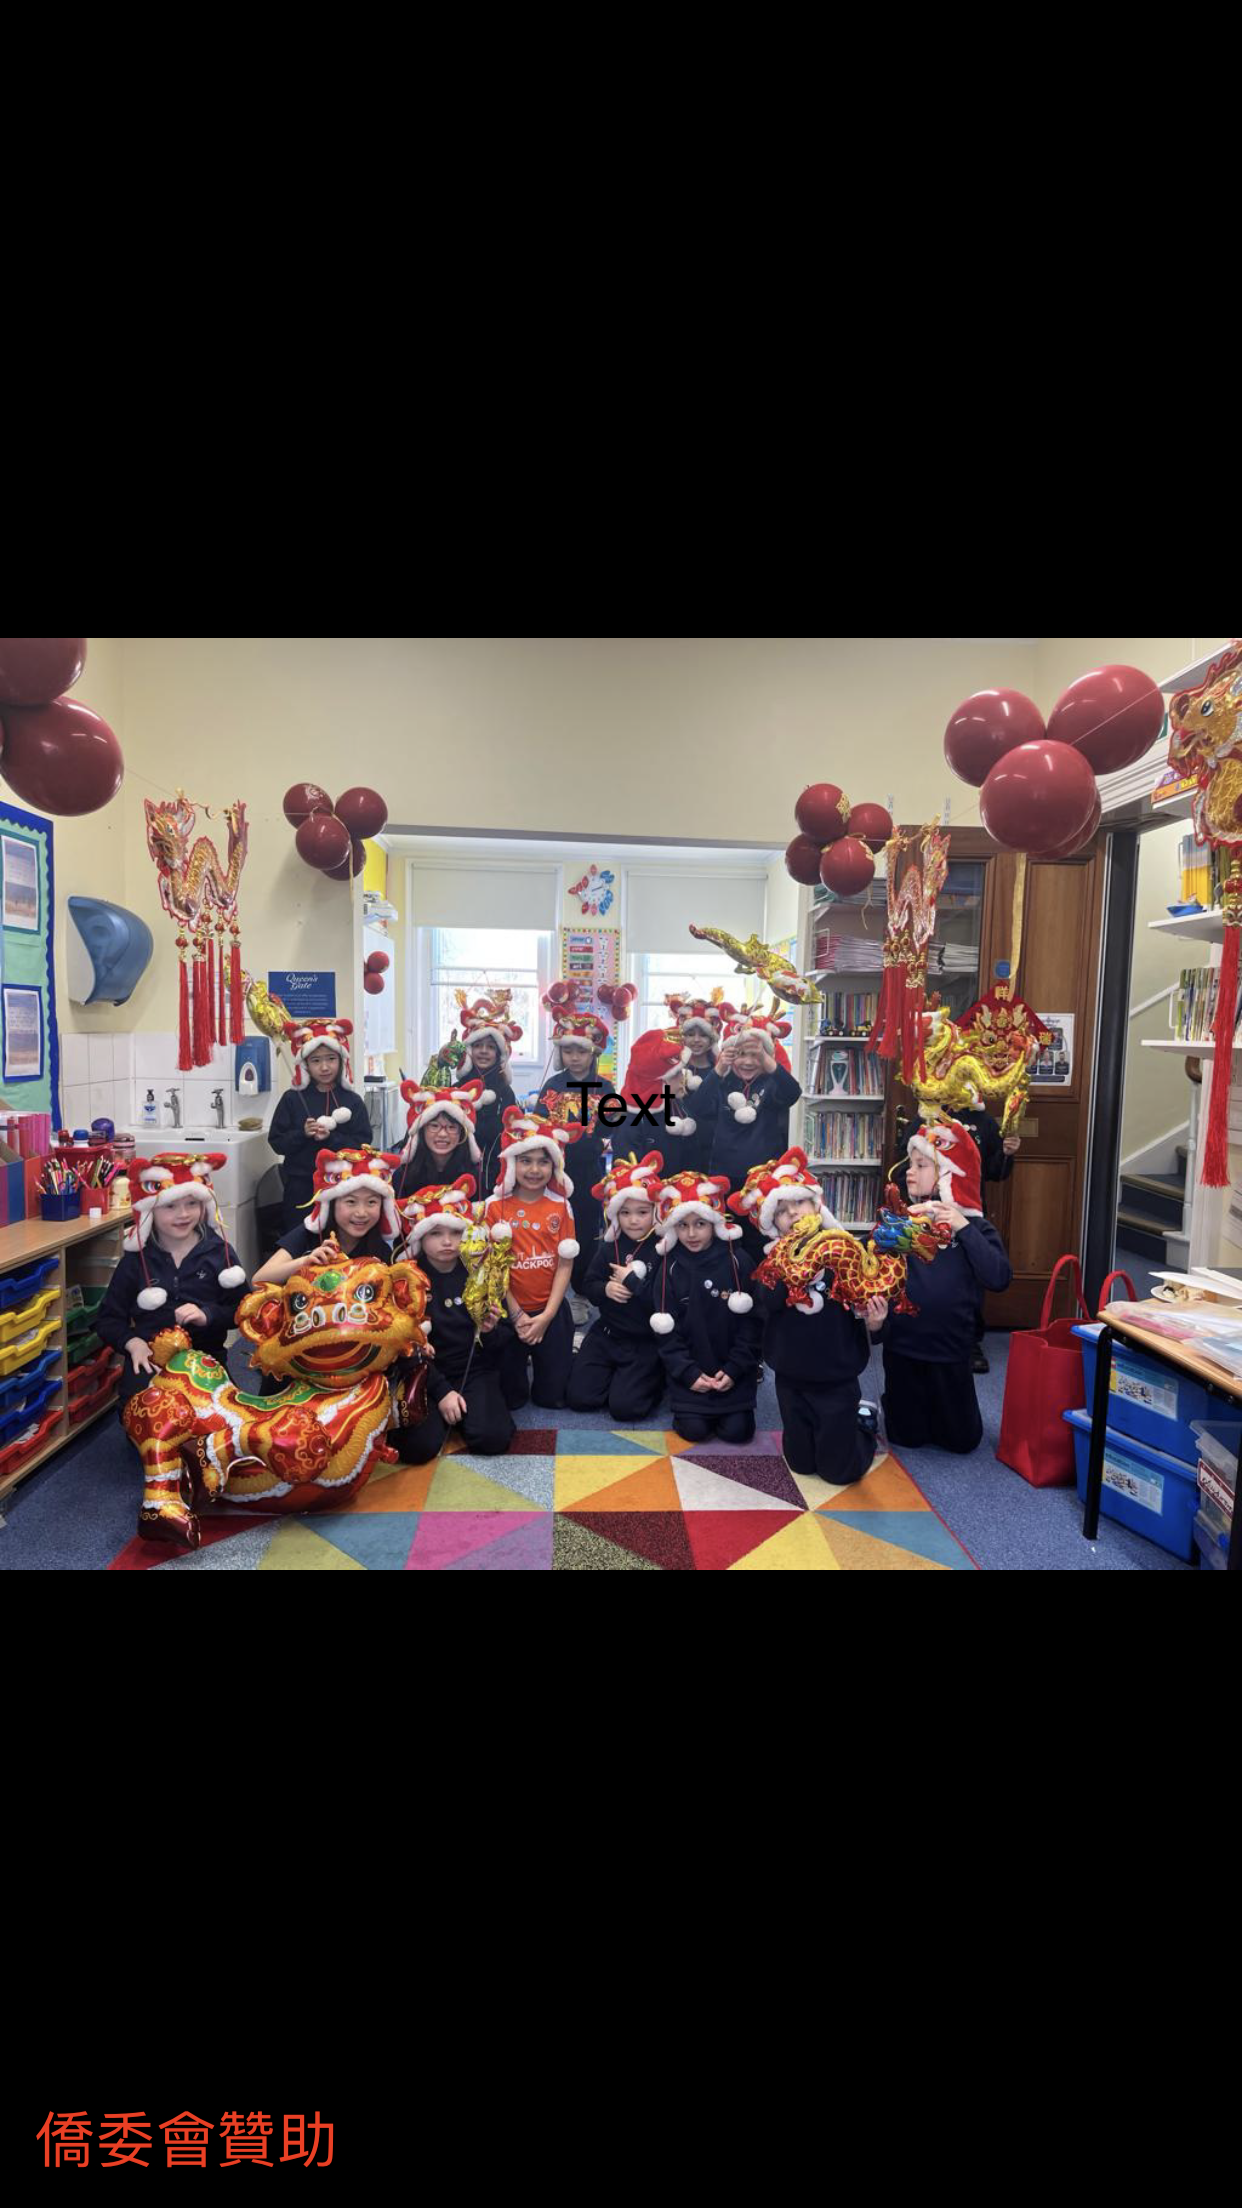 我們學校也跟英國學校的學生們一起慶祝農曆新年.